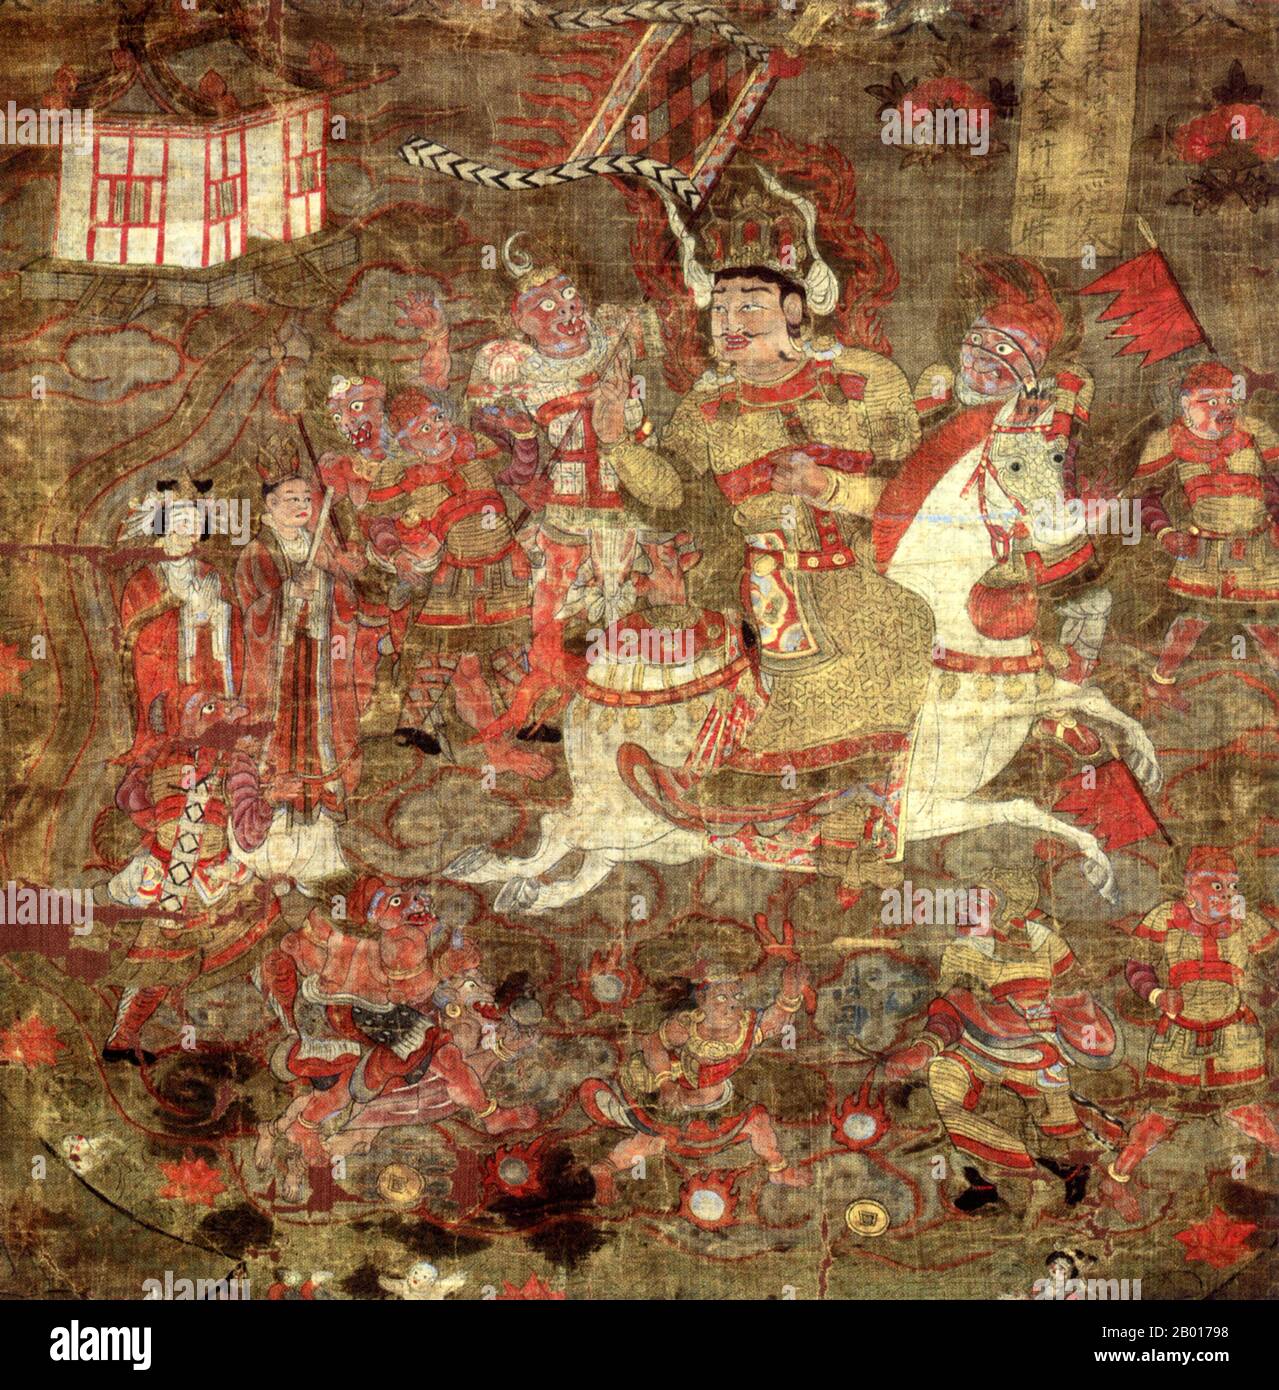 Chine : Vaisravana, l'un des quatre rois bouddhistes gardiens.Toile de défilement suspendue, Grottes de Mogao, Dunhuang, 8th-9th siècle.Vaisravaṇa (Sanskrit) ou Vessavaṇa (Pali) également connu sous le nom de Jambhala au Tibet et Bishamonten au Japon est le nom du chef des quatre rois célestes et une figure importante dans la mythologie bouddhiste.Ici, il est représenté en traversant la mer.Les rois de l'époque bouddhiste de Kolan ont revendiqué la descente de Vaisravana, qui est dit être venu vivre dans l'oasis quand il n'était qu'un désert. Banque D'Images